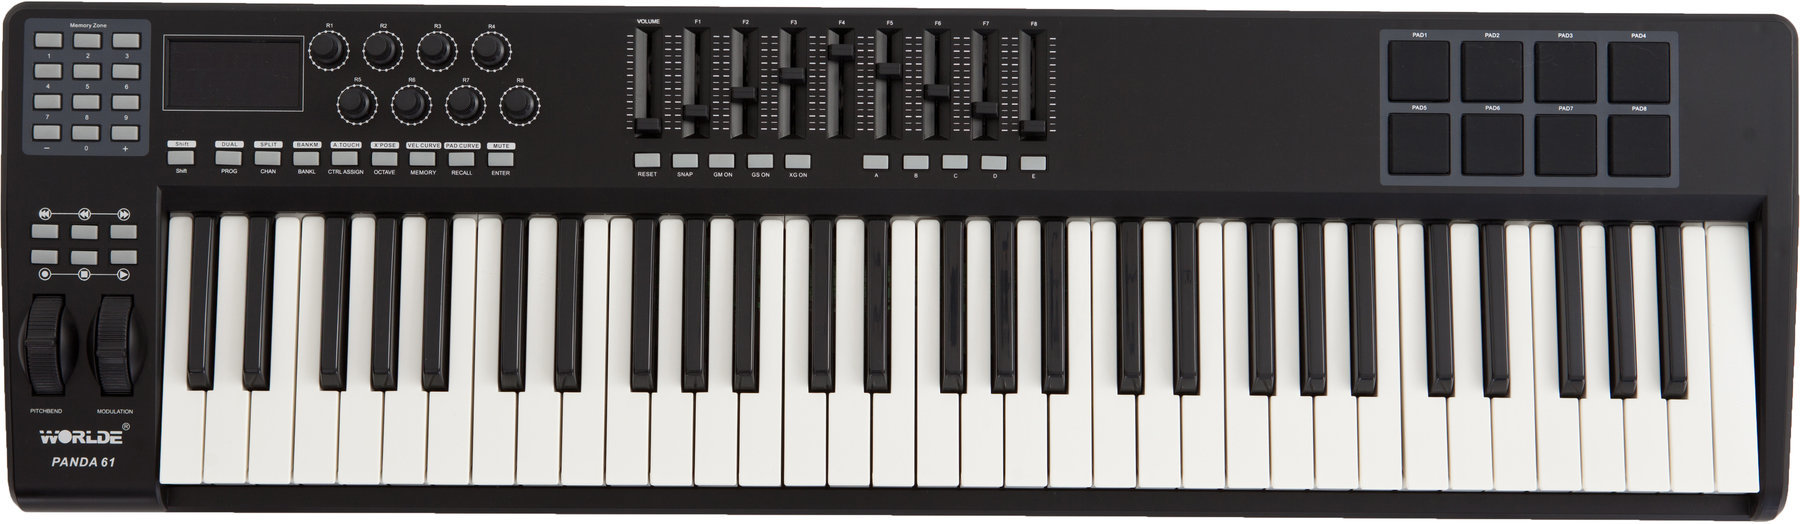 Master-Keyboard Worlde PANDA-61